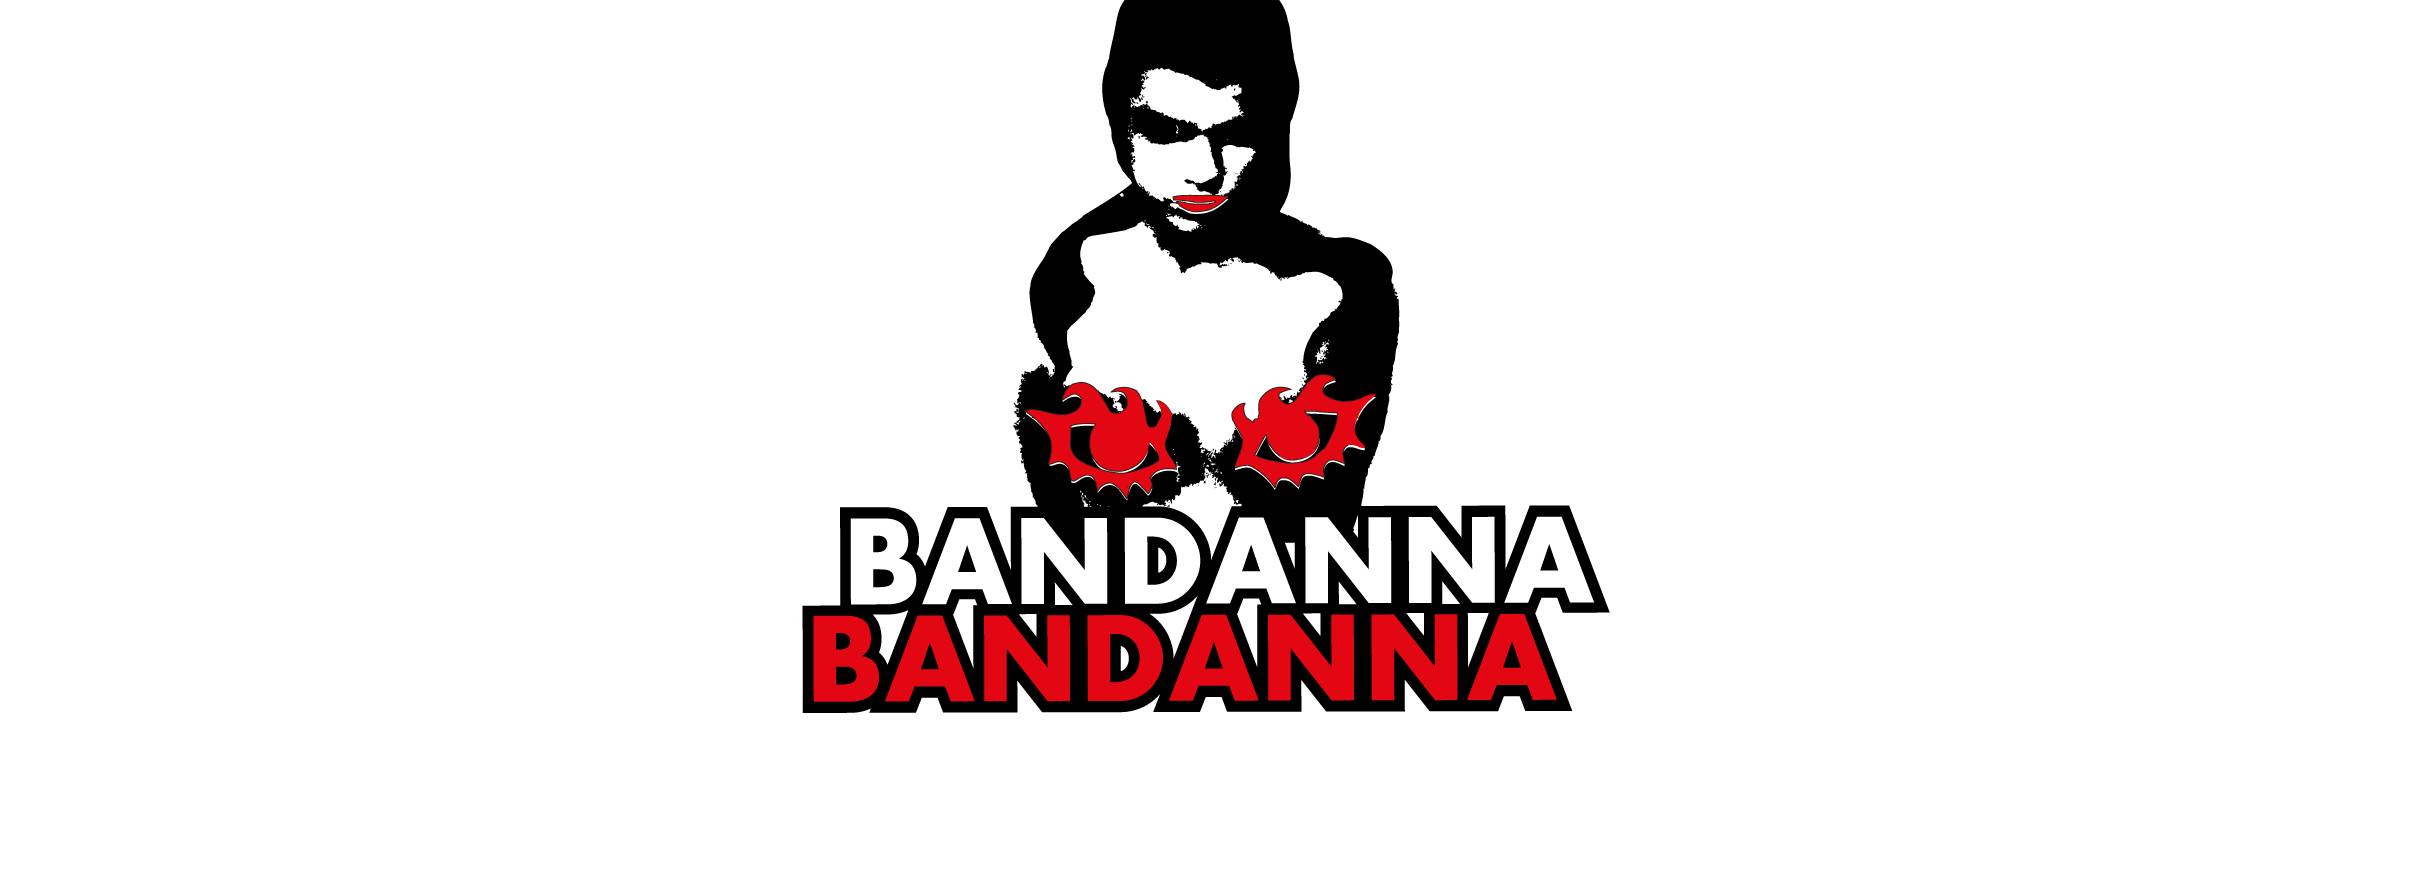 Bandanna Bandana